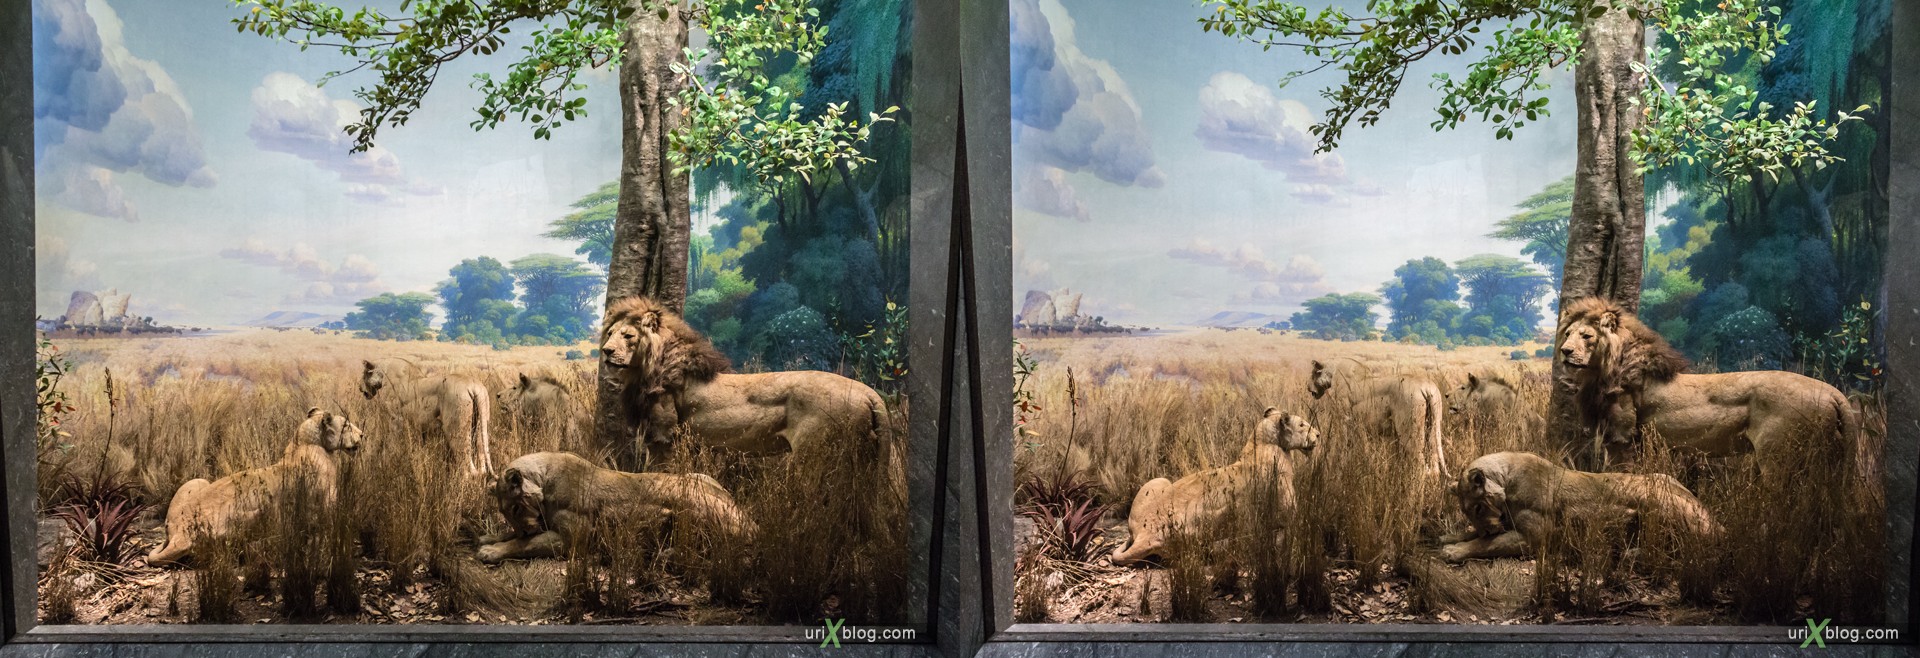 2013, Американский Музей Естественной Истории, Нью-Йорк, США, Скелет, Донозавр, животное, чучело, диарама, 3D, перекрёстные стереопары, стерео, стереопара, стереопары